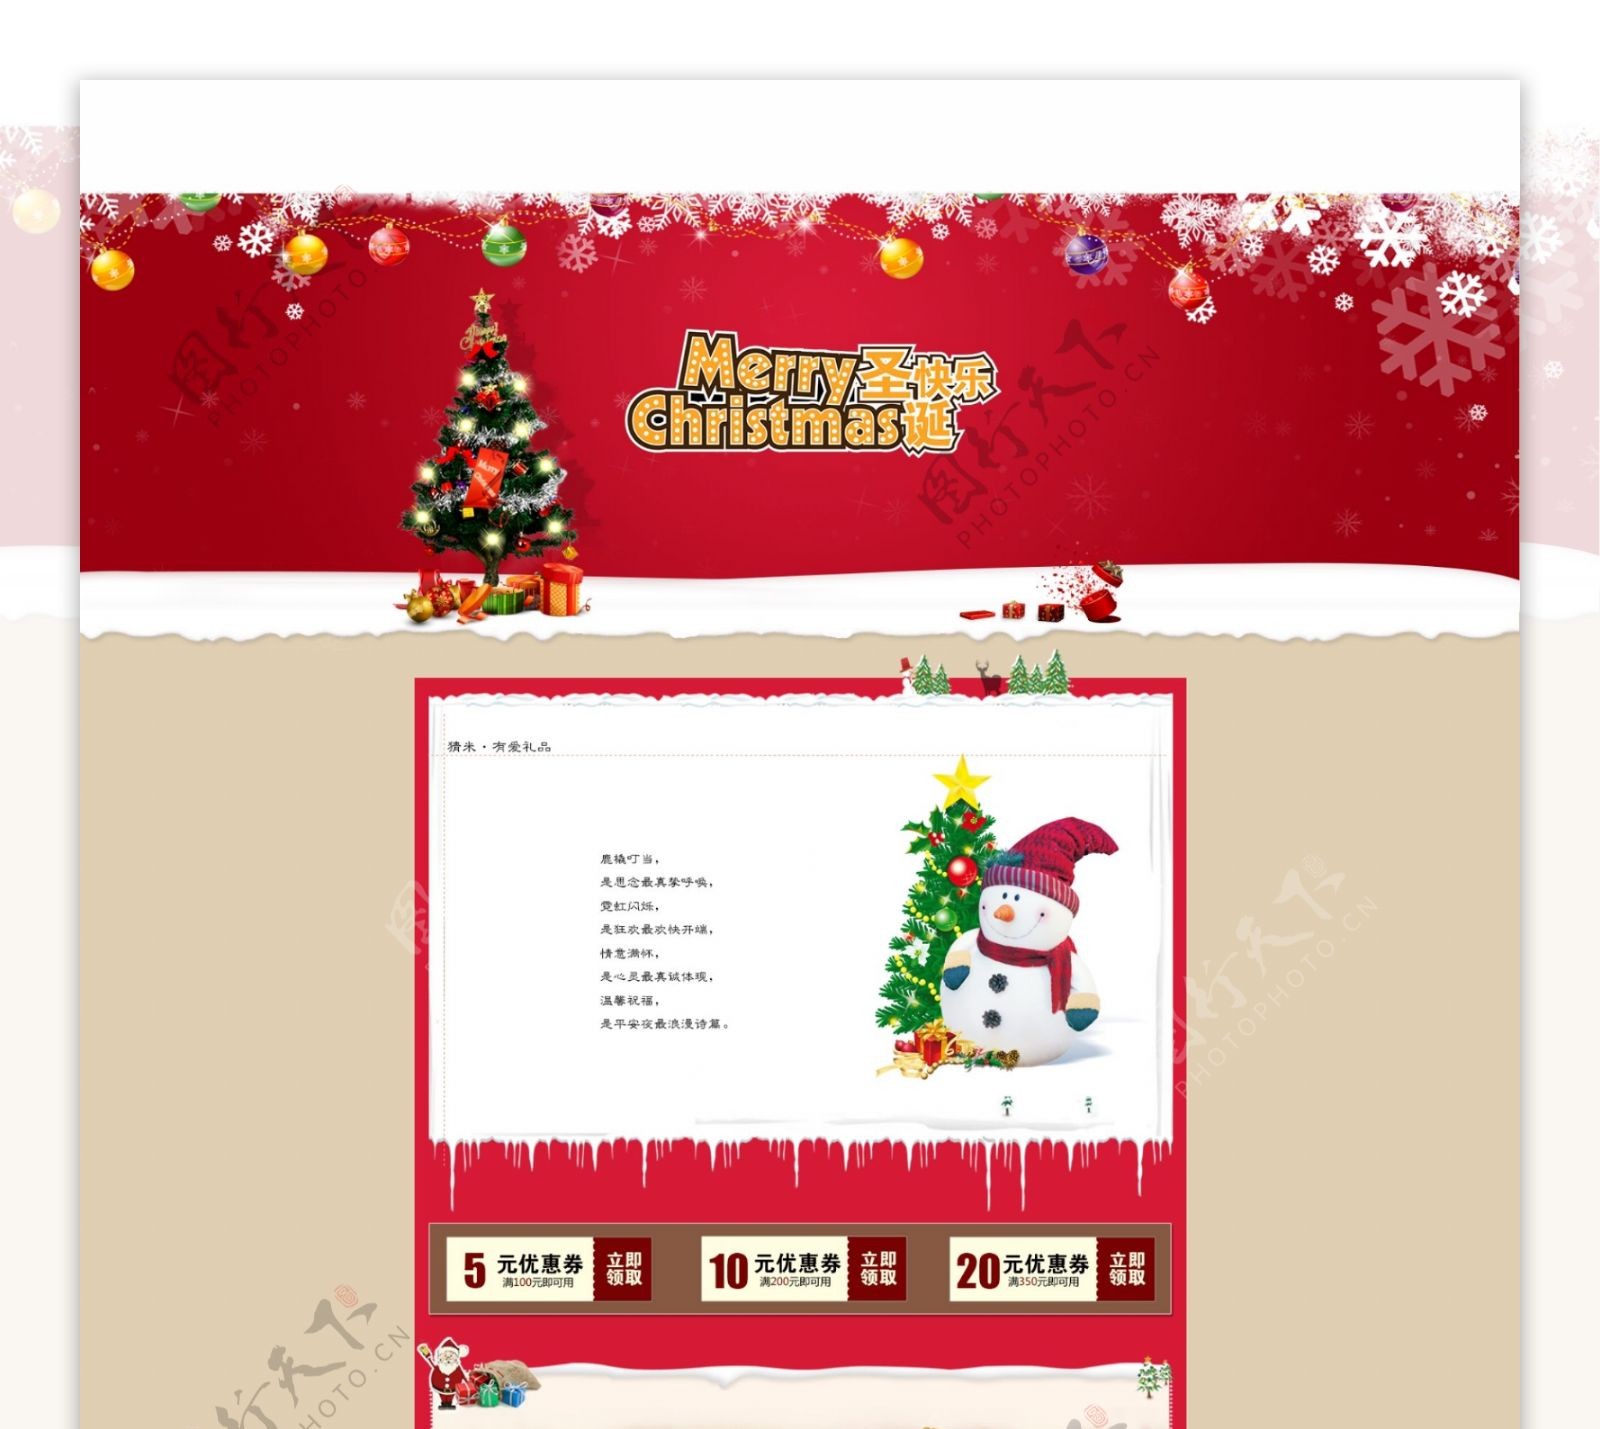 天猫店铺圣诞活动页面设计